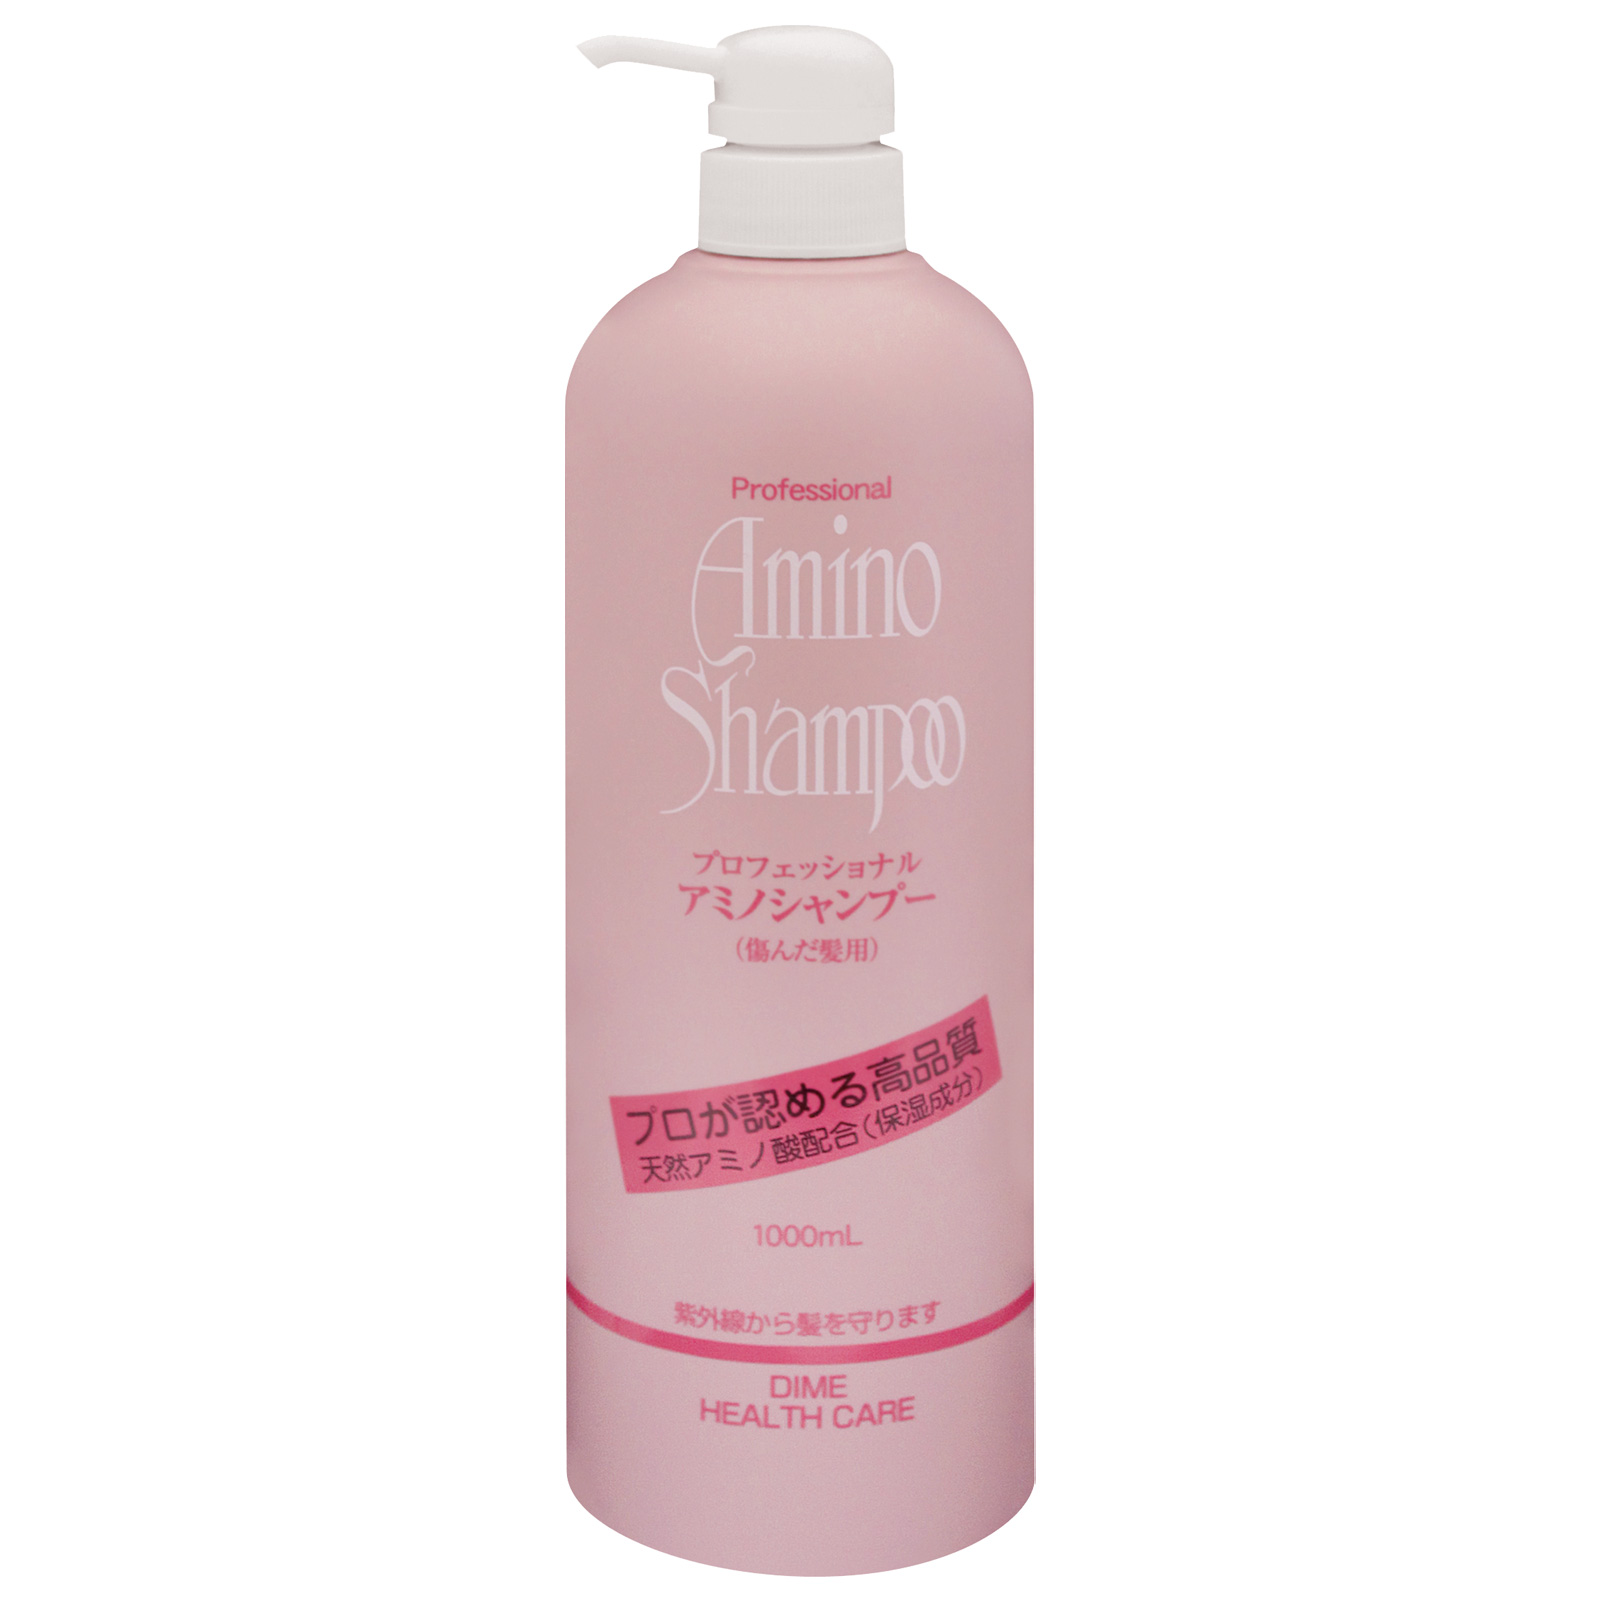 Dime Health Care. Professional Amino Shampoo. Профессиональный шампунь на основе аминокислот для повреждённых волос. 1000 мл.